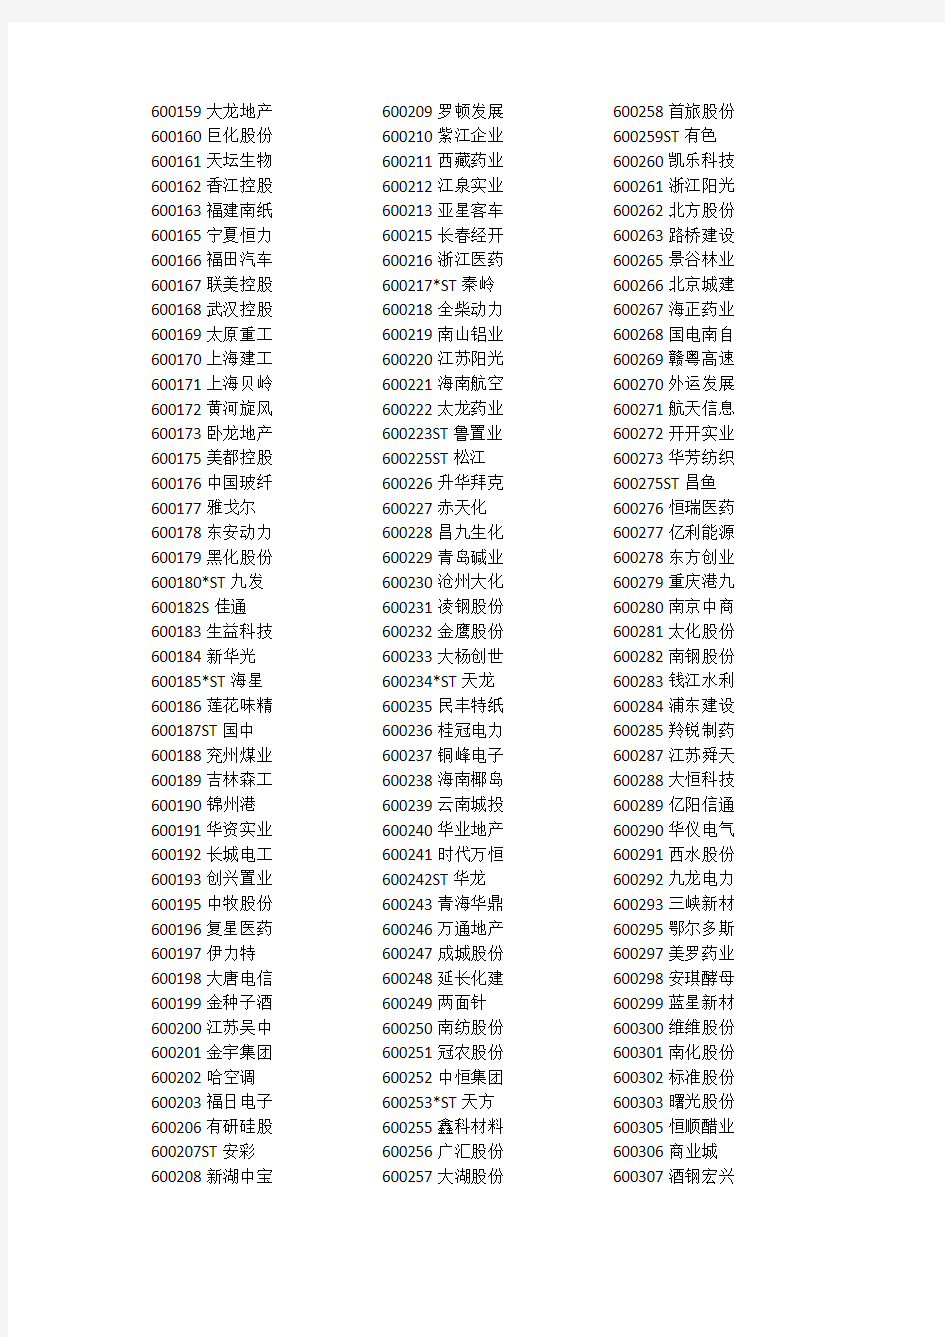 中国上市A股公司名单及其证券代码